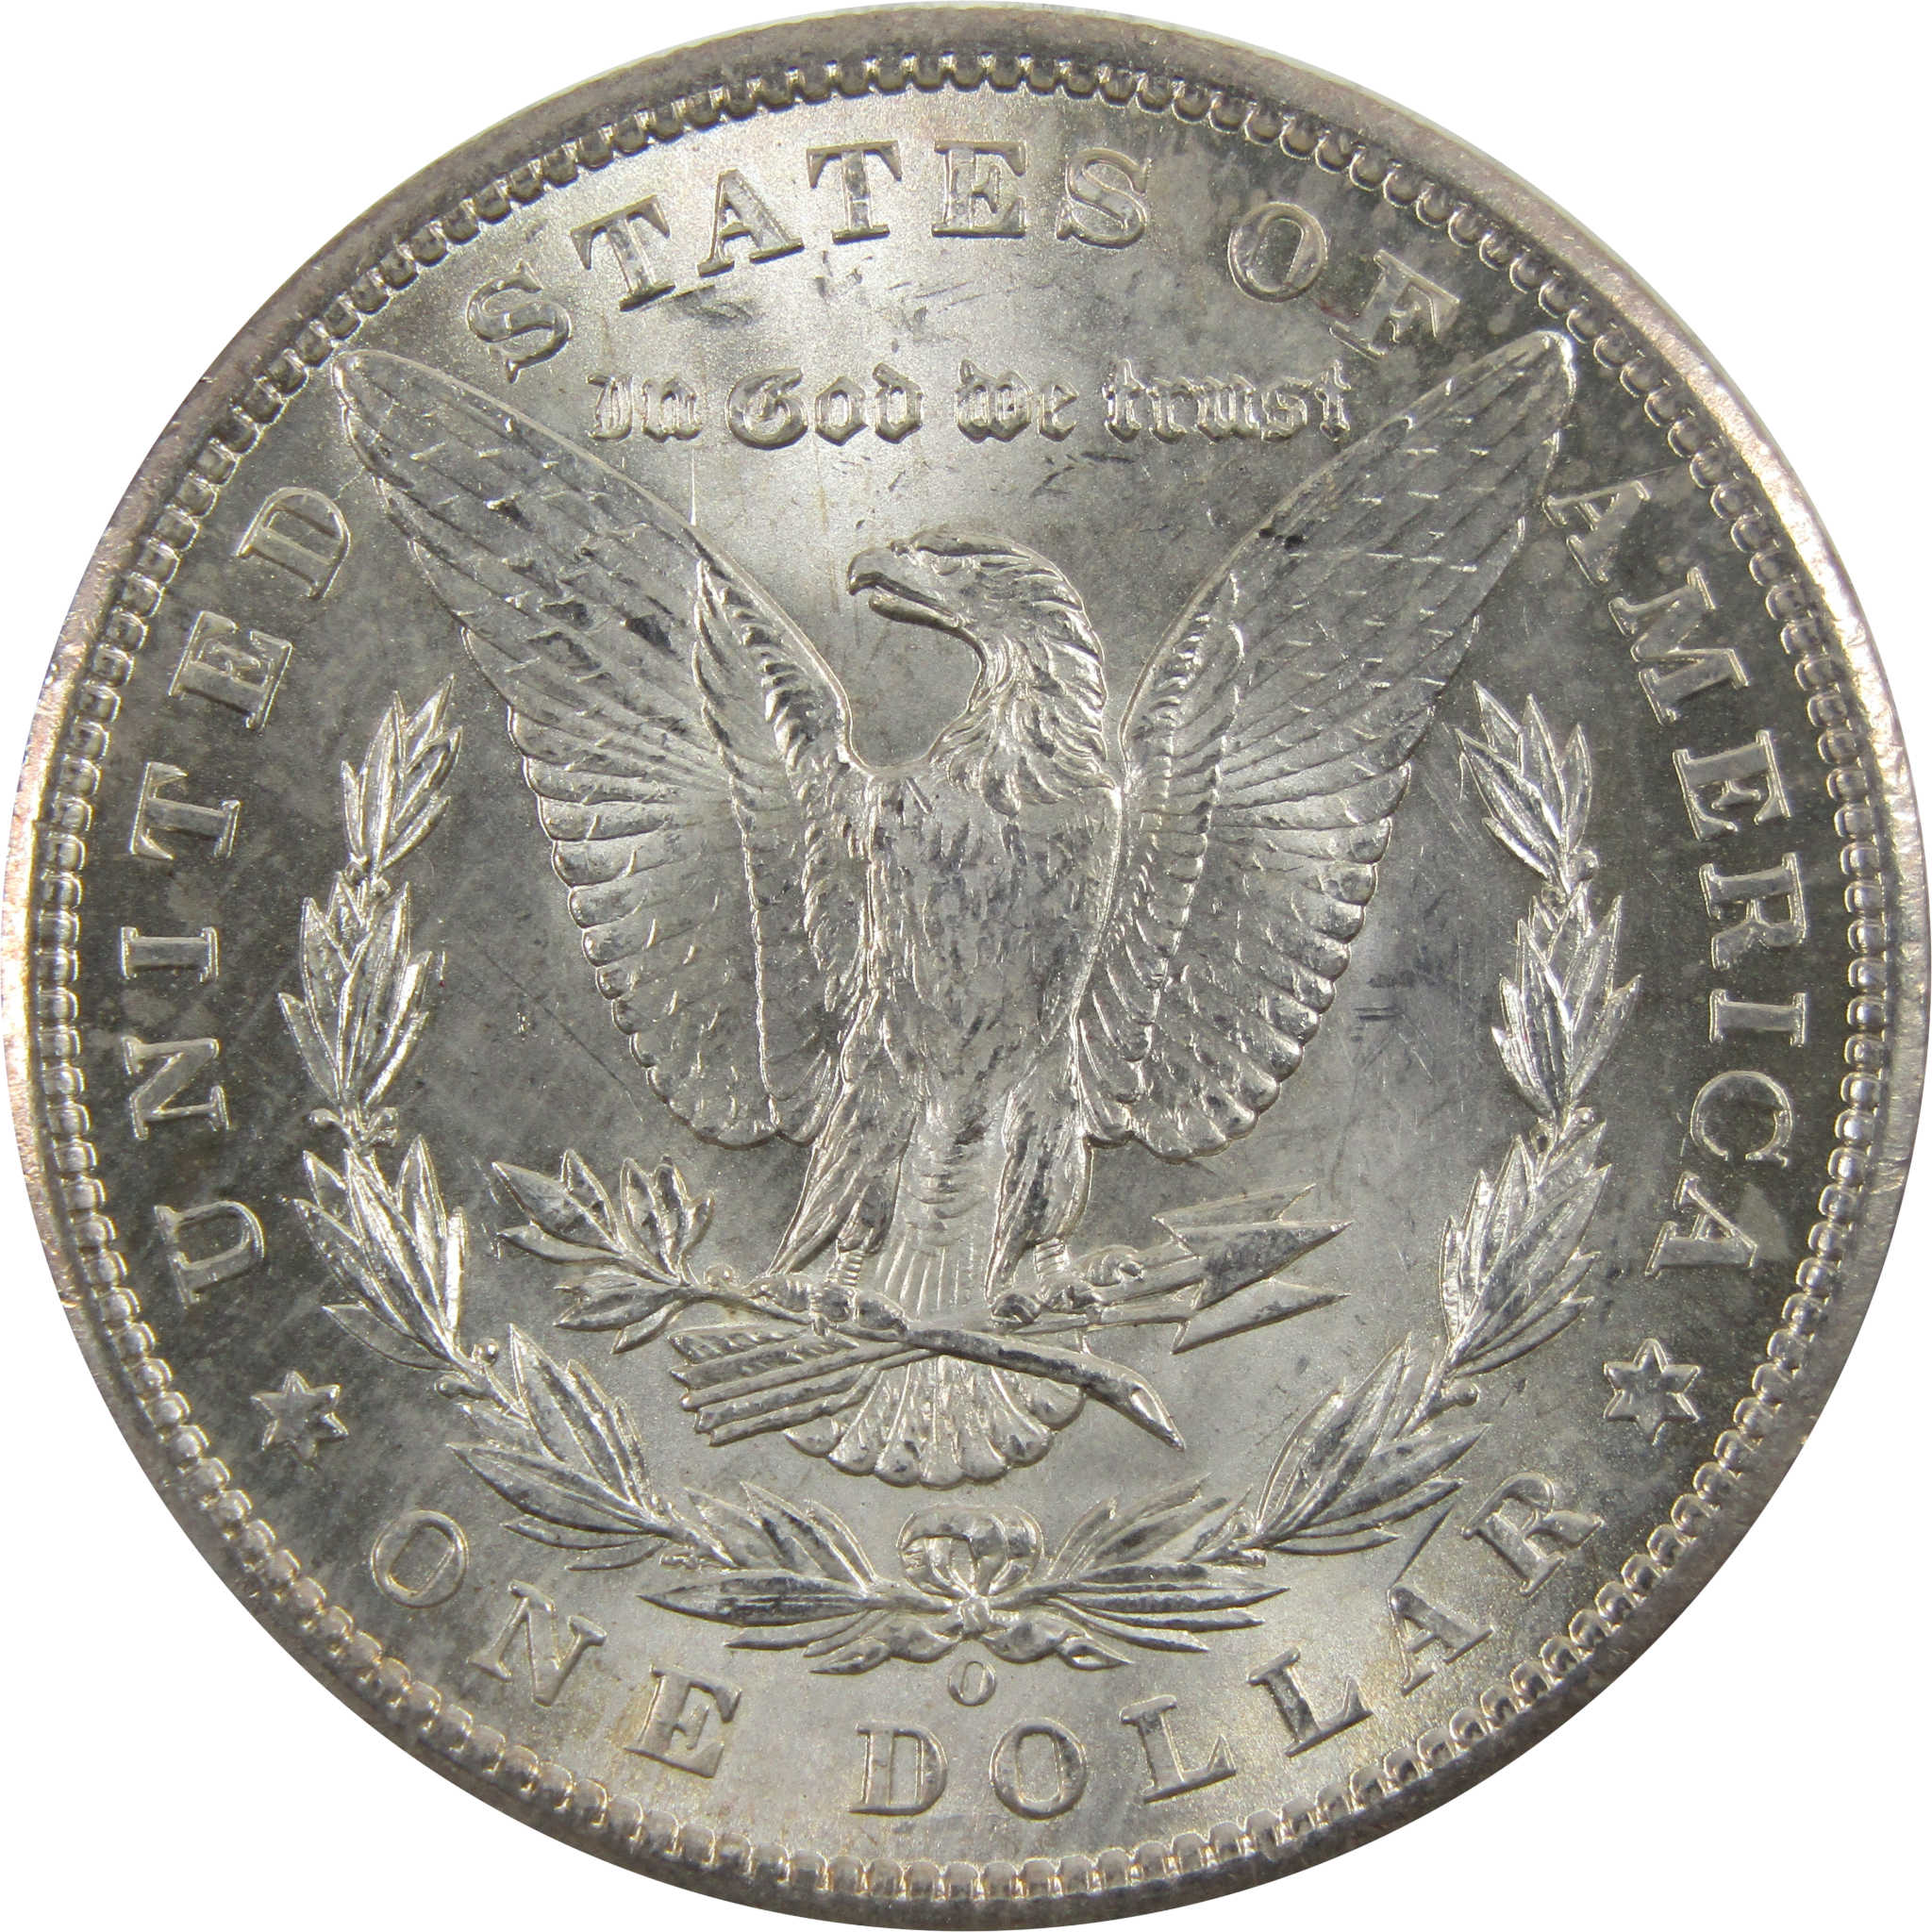 1898 O Morgan Dollar BU Uncirculated 90% Silver $1 Coin SKU:I5241 - Morgan coin - Morgan silver dollar - Morgan silver dollar for sale - Profile Coins &amp; Collectibles